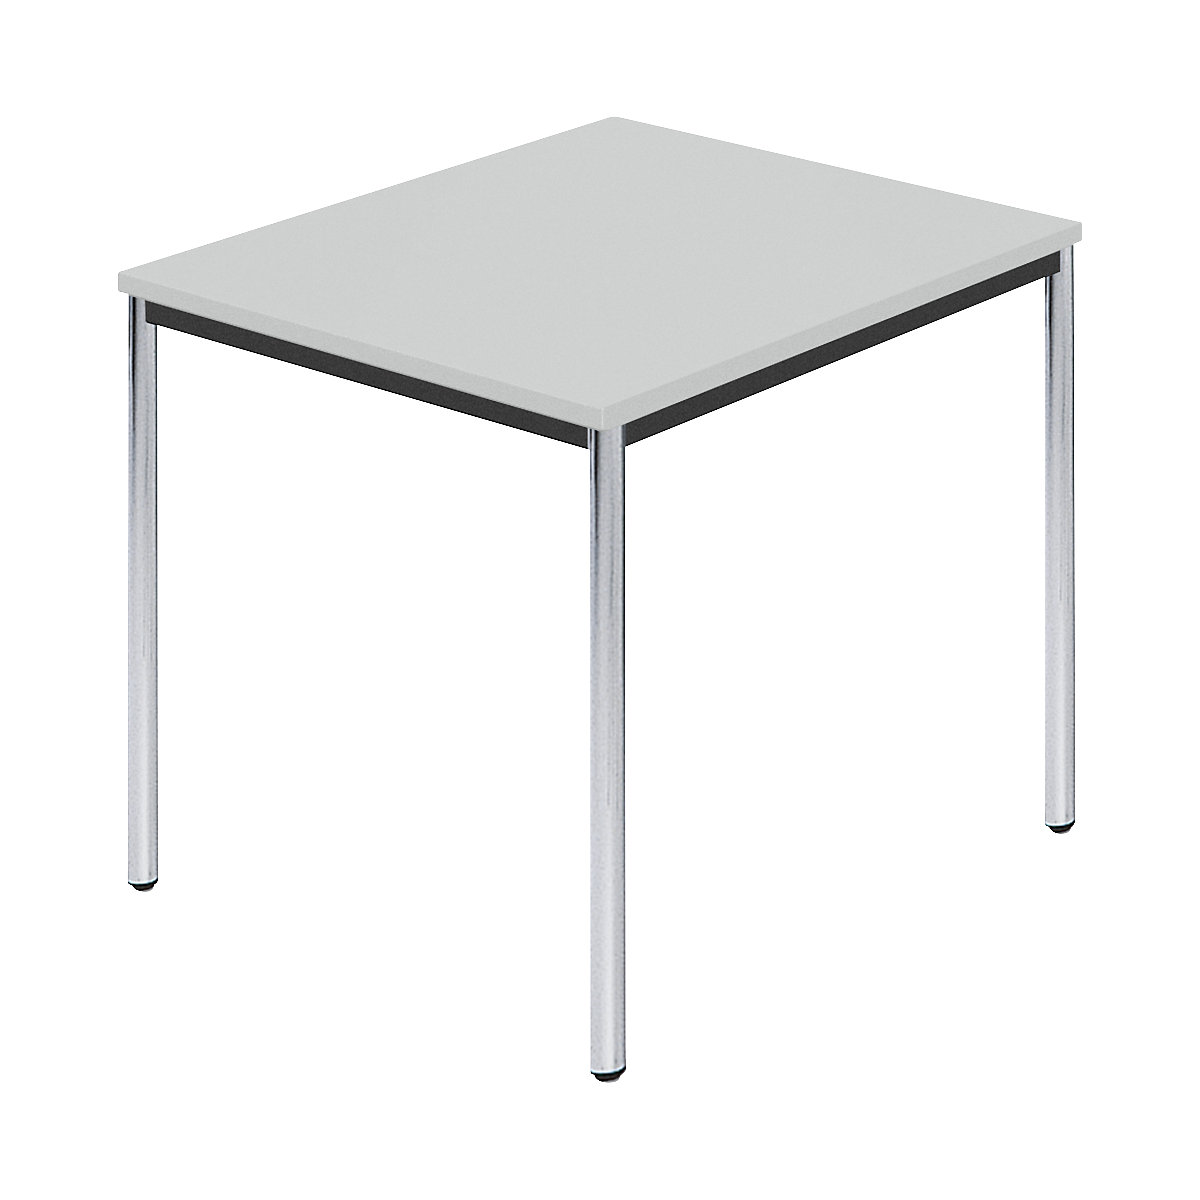 Pravokutni stol, kromirana okrugla cijev, ŠxD 800 x 800 mm, u sivoj boji-6